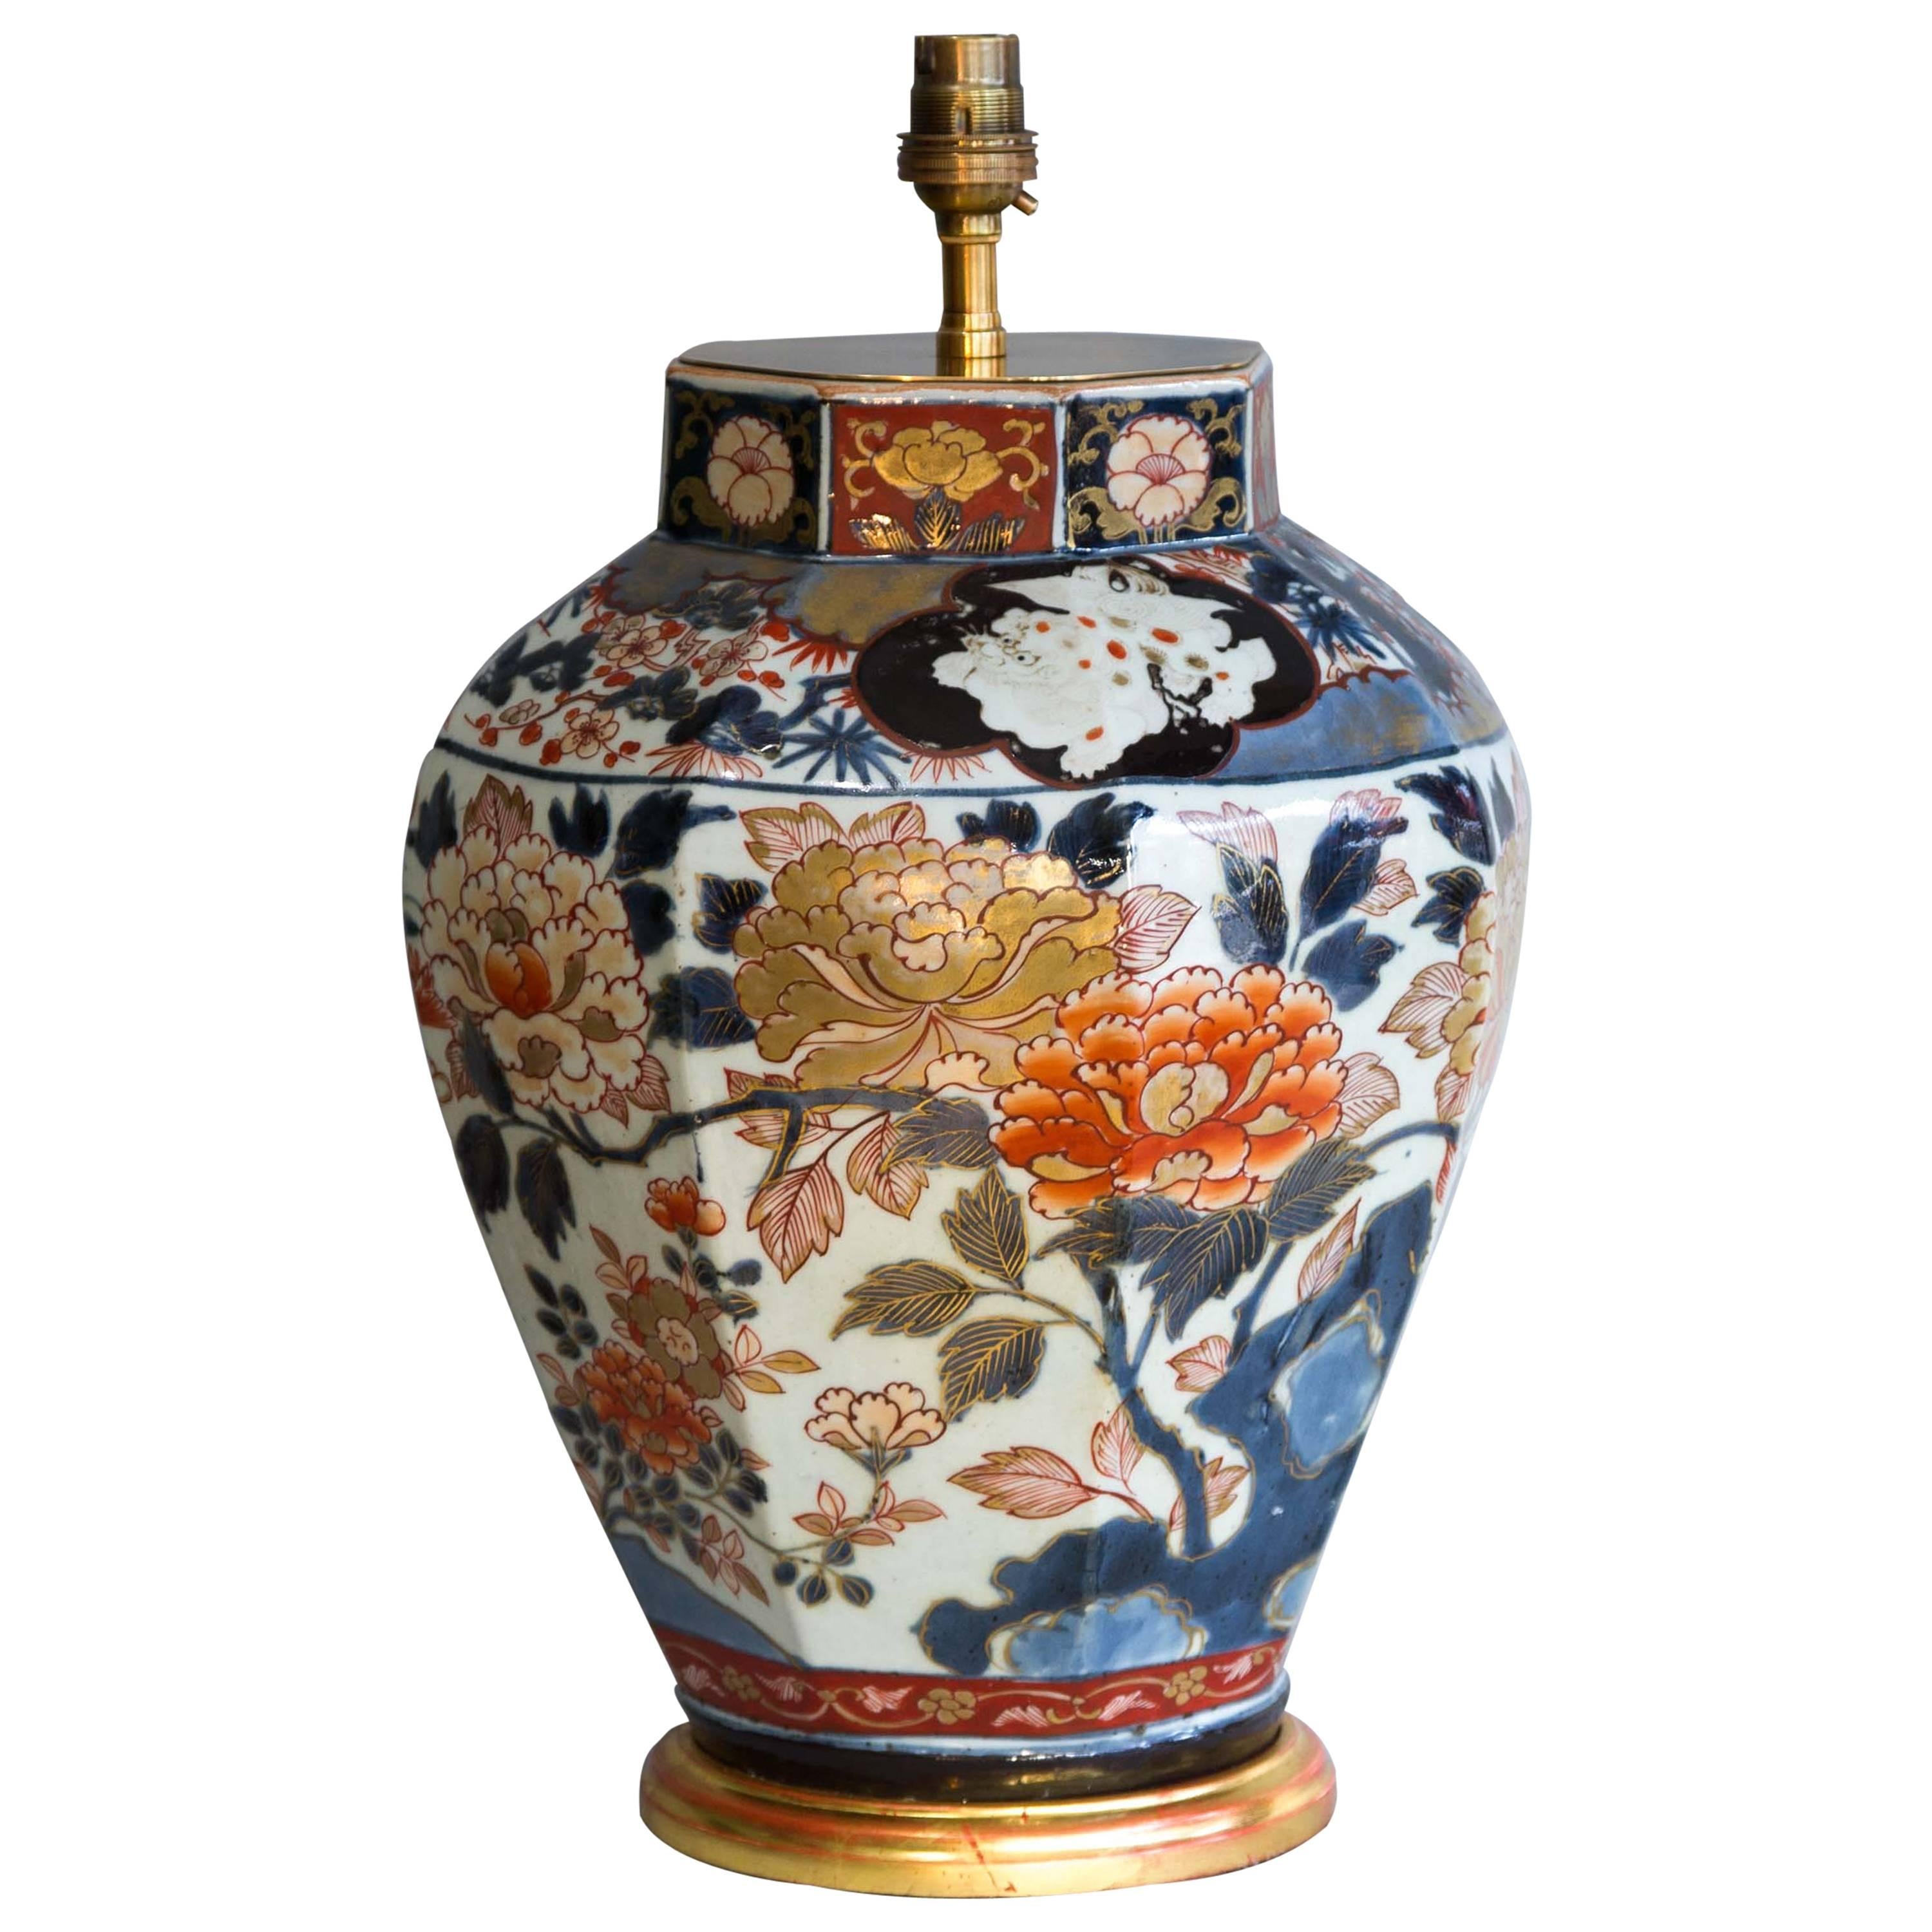 Exceptional Japanese Imari Lamped Vase, circa 1700